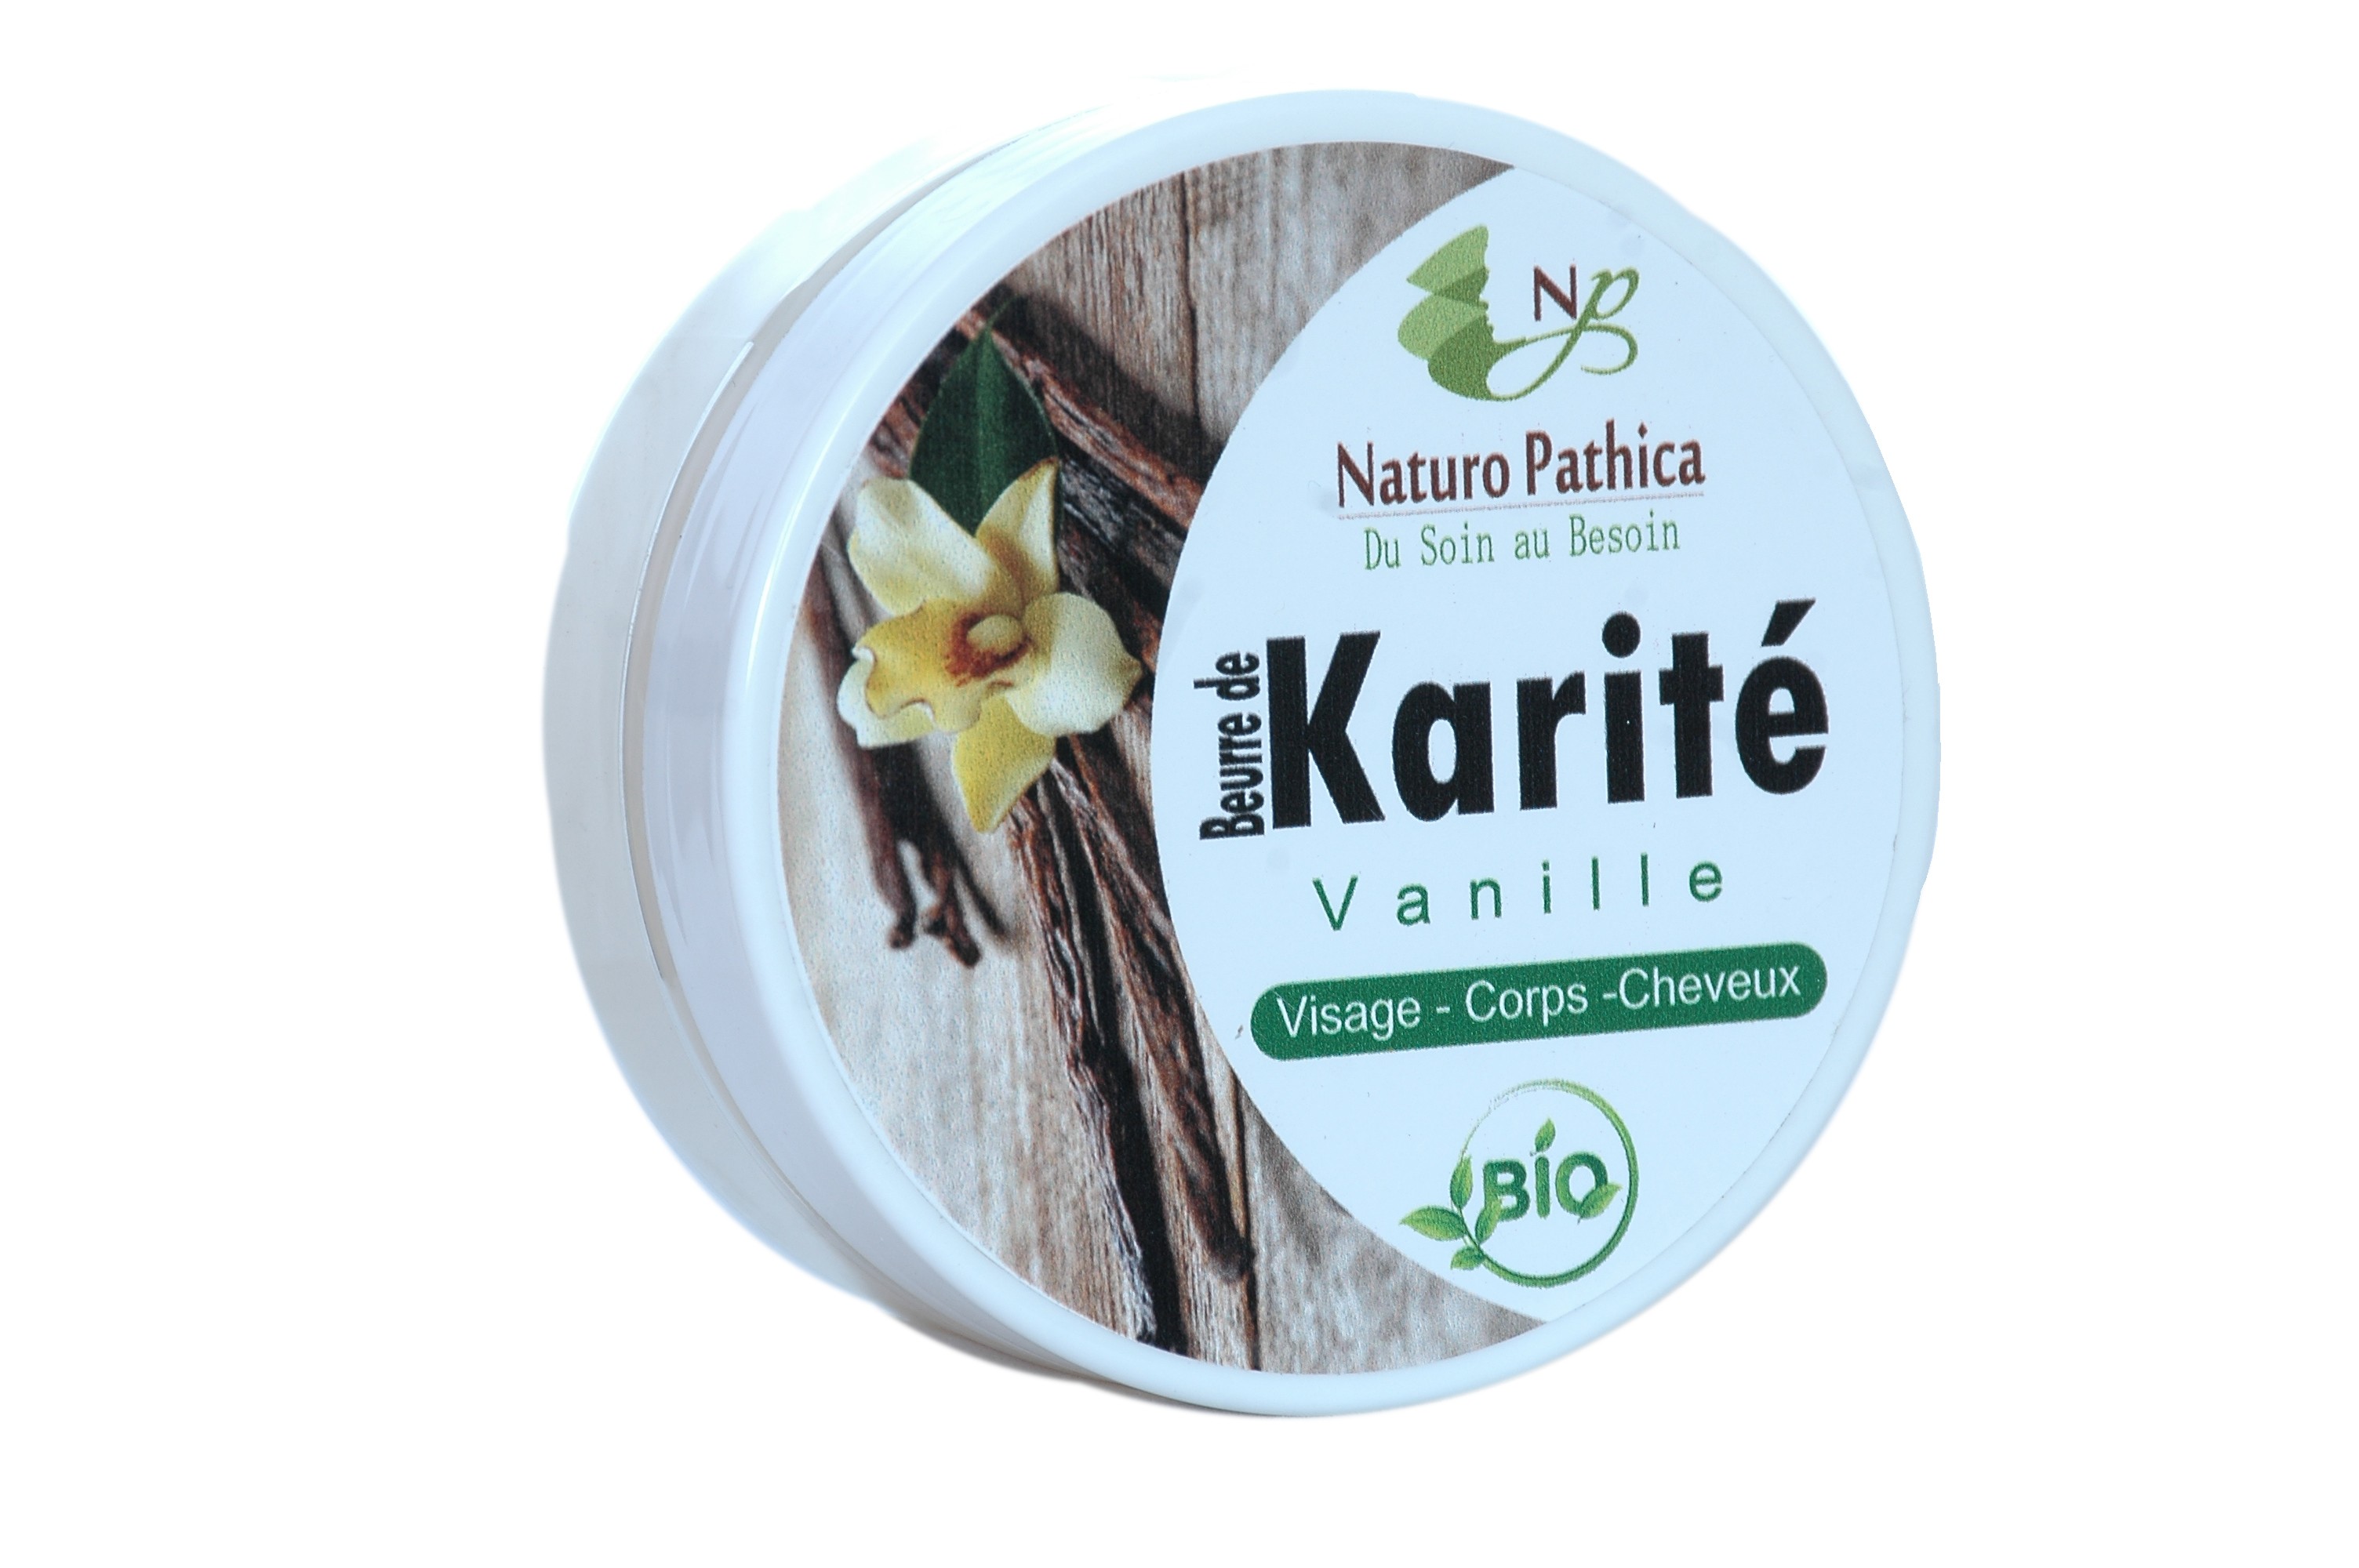 Beurre de Karité Bio 100% Pur pour le Visage, les Cheveux et le Corps –  Pharma Bio Univers Paris